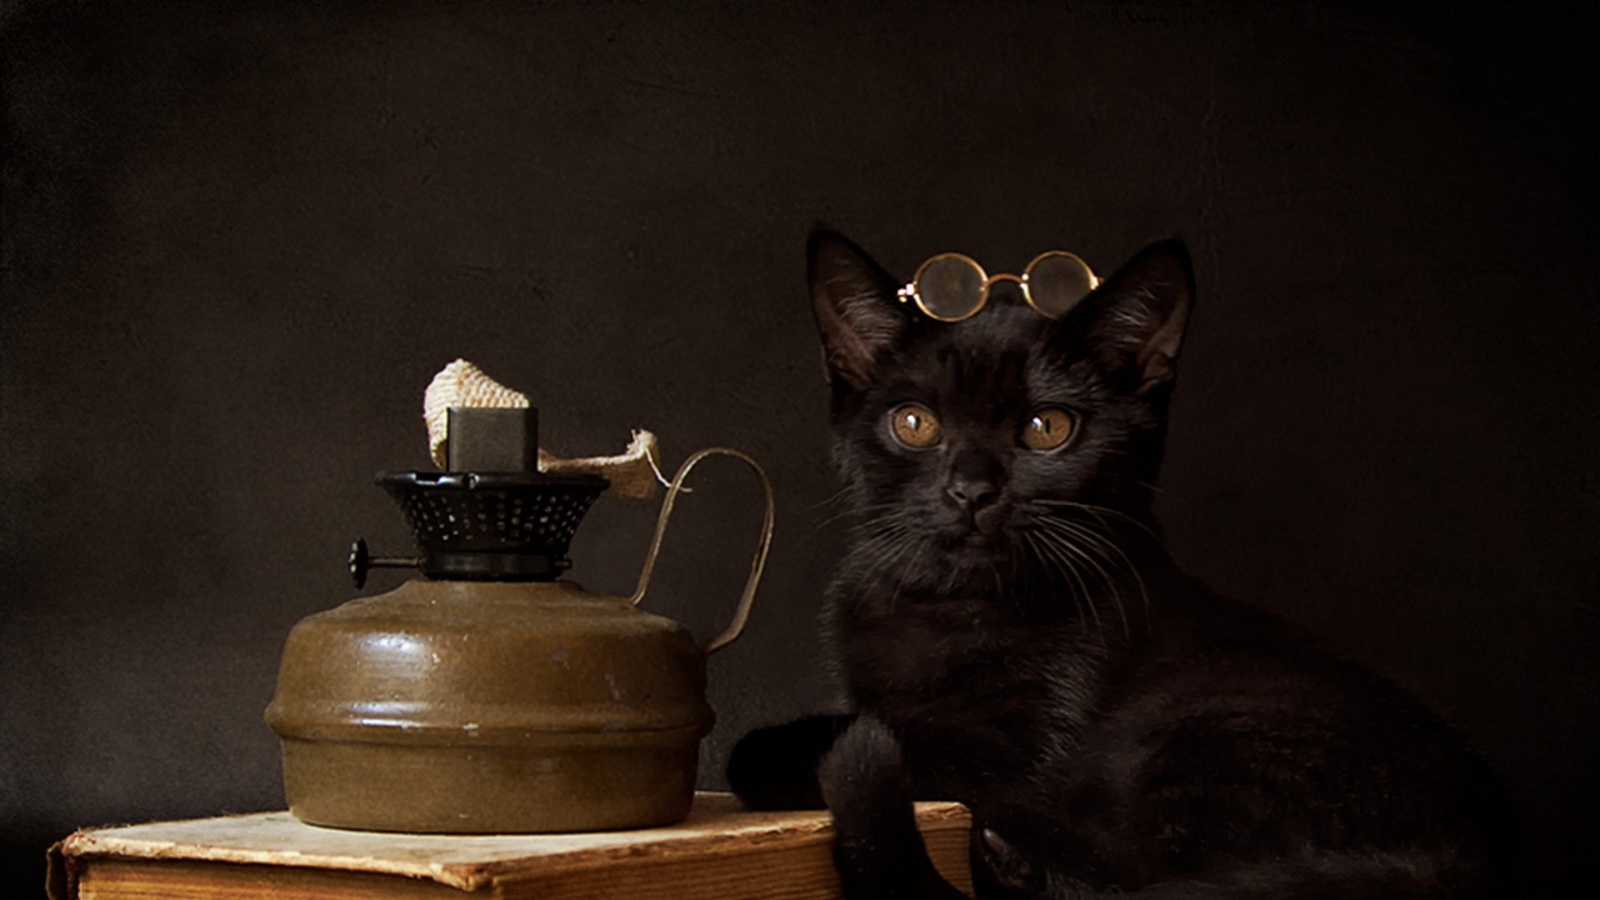 Черный кот в очках